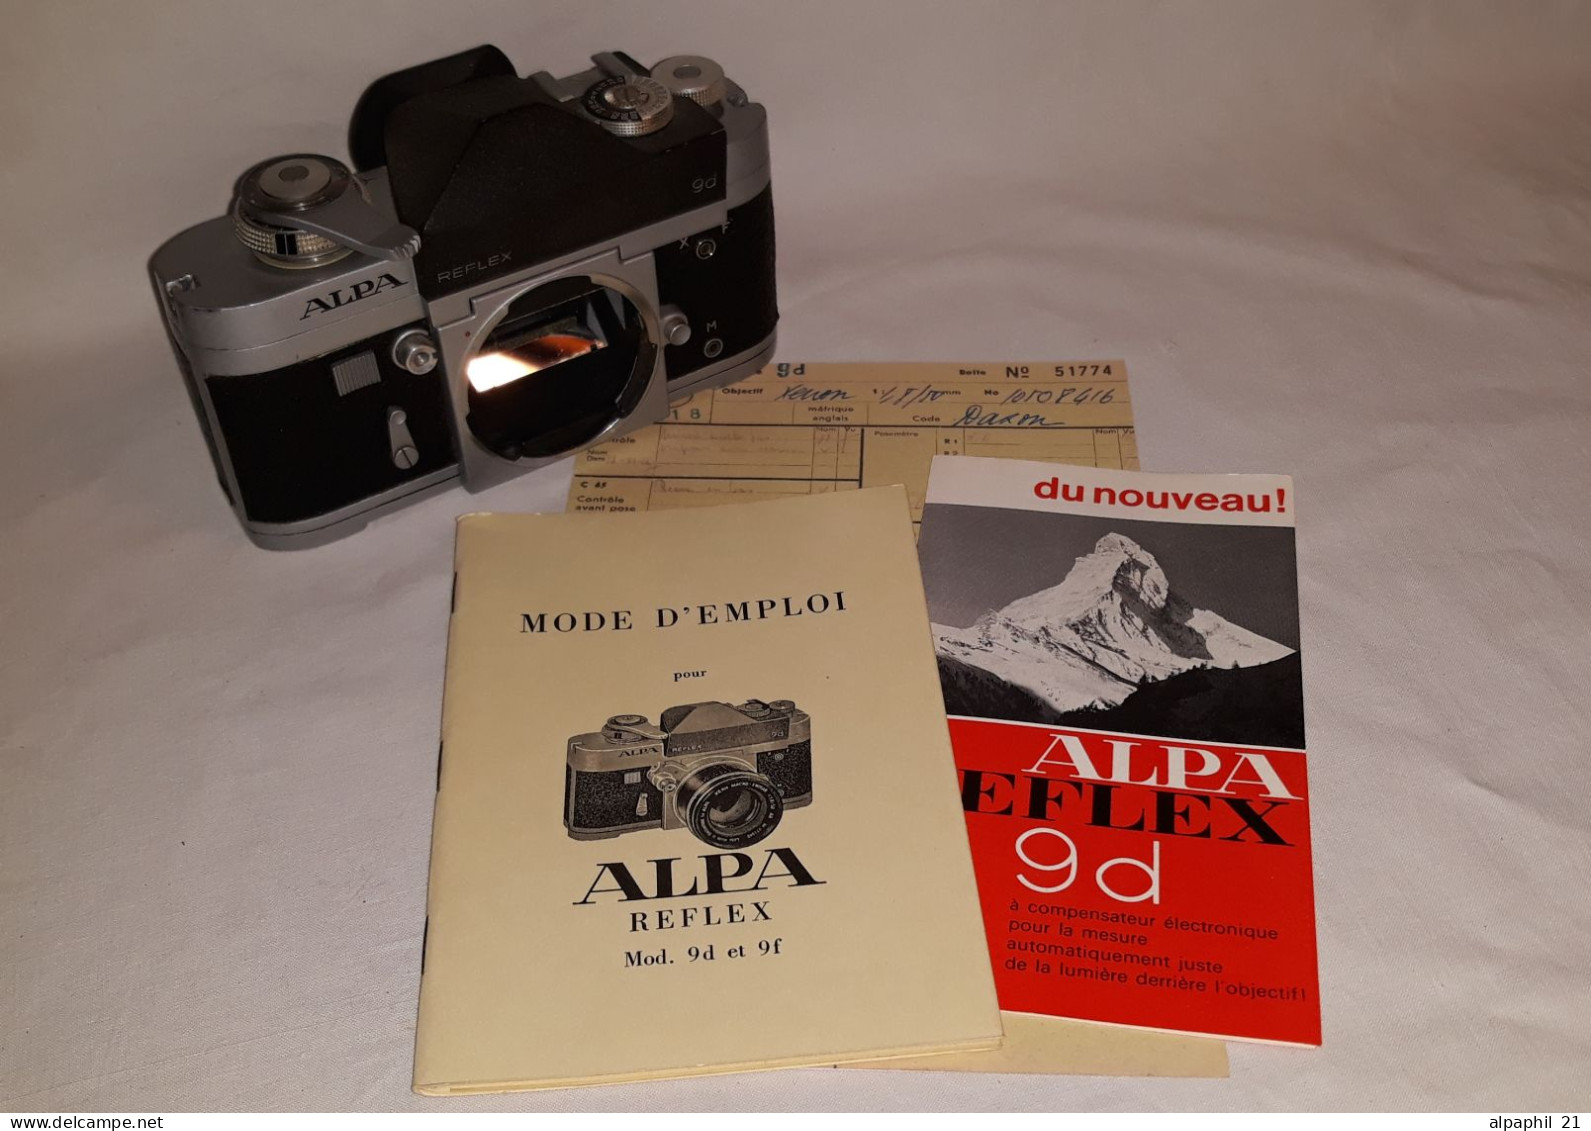 Alpa Reflex 9d - Fotoapparate